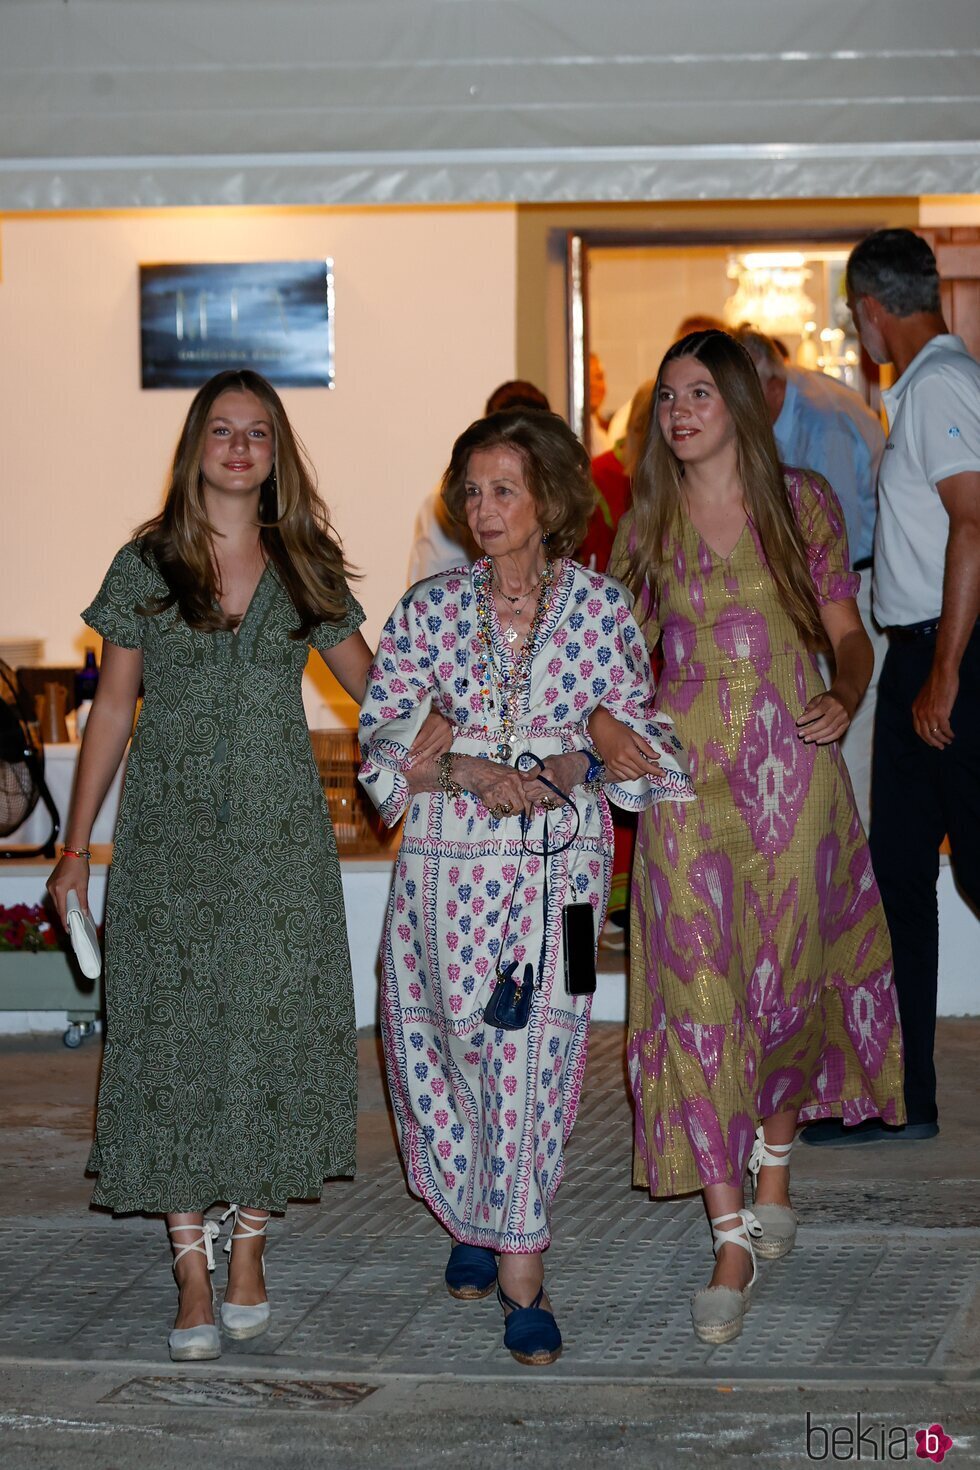 La Reina Sofía, del brazo de la Princesa Leonor y la Infanta Sofía tras una cena en Mallorca